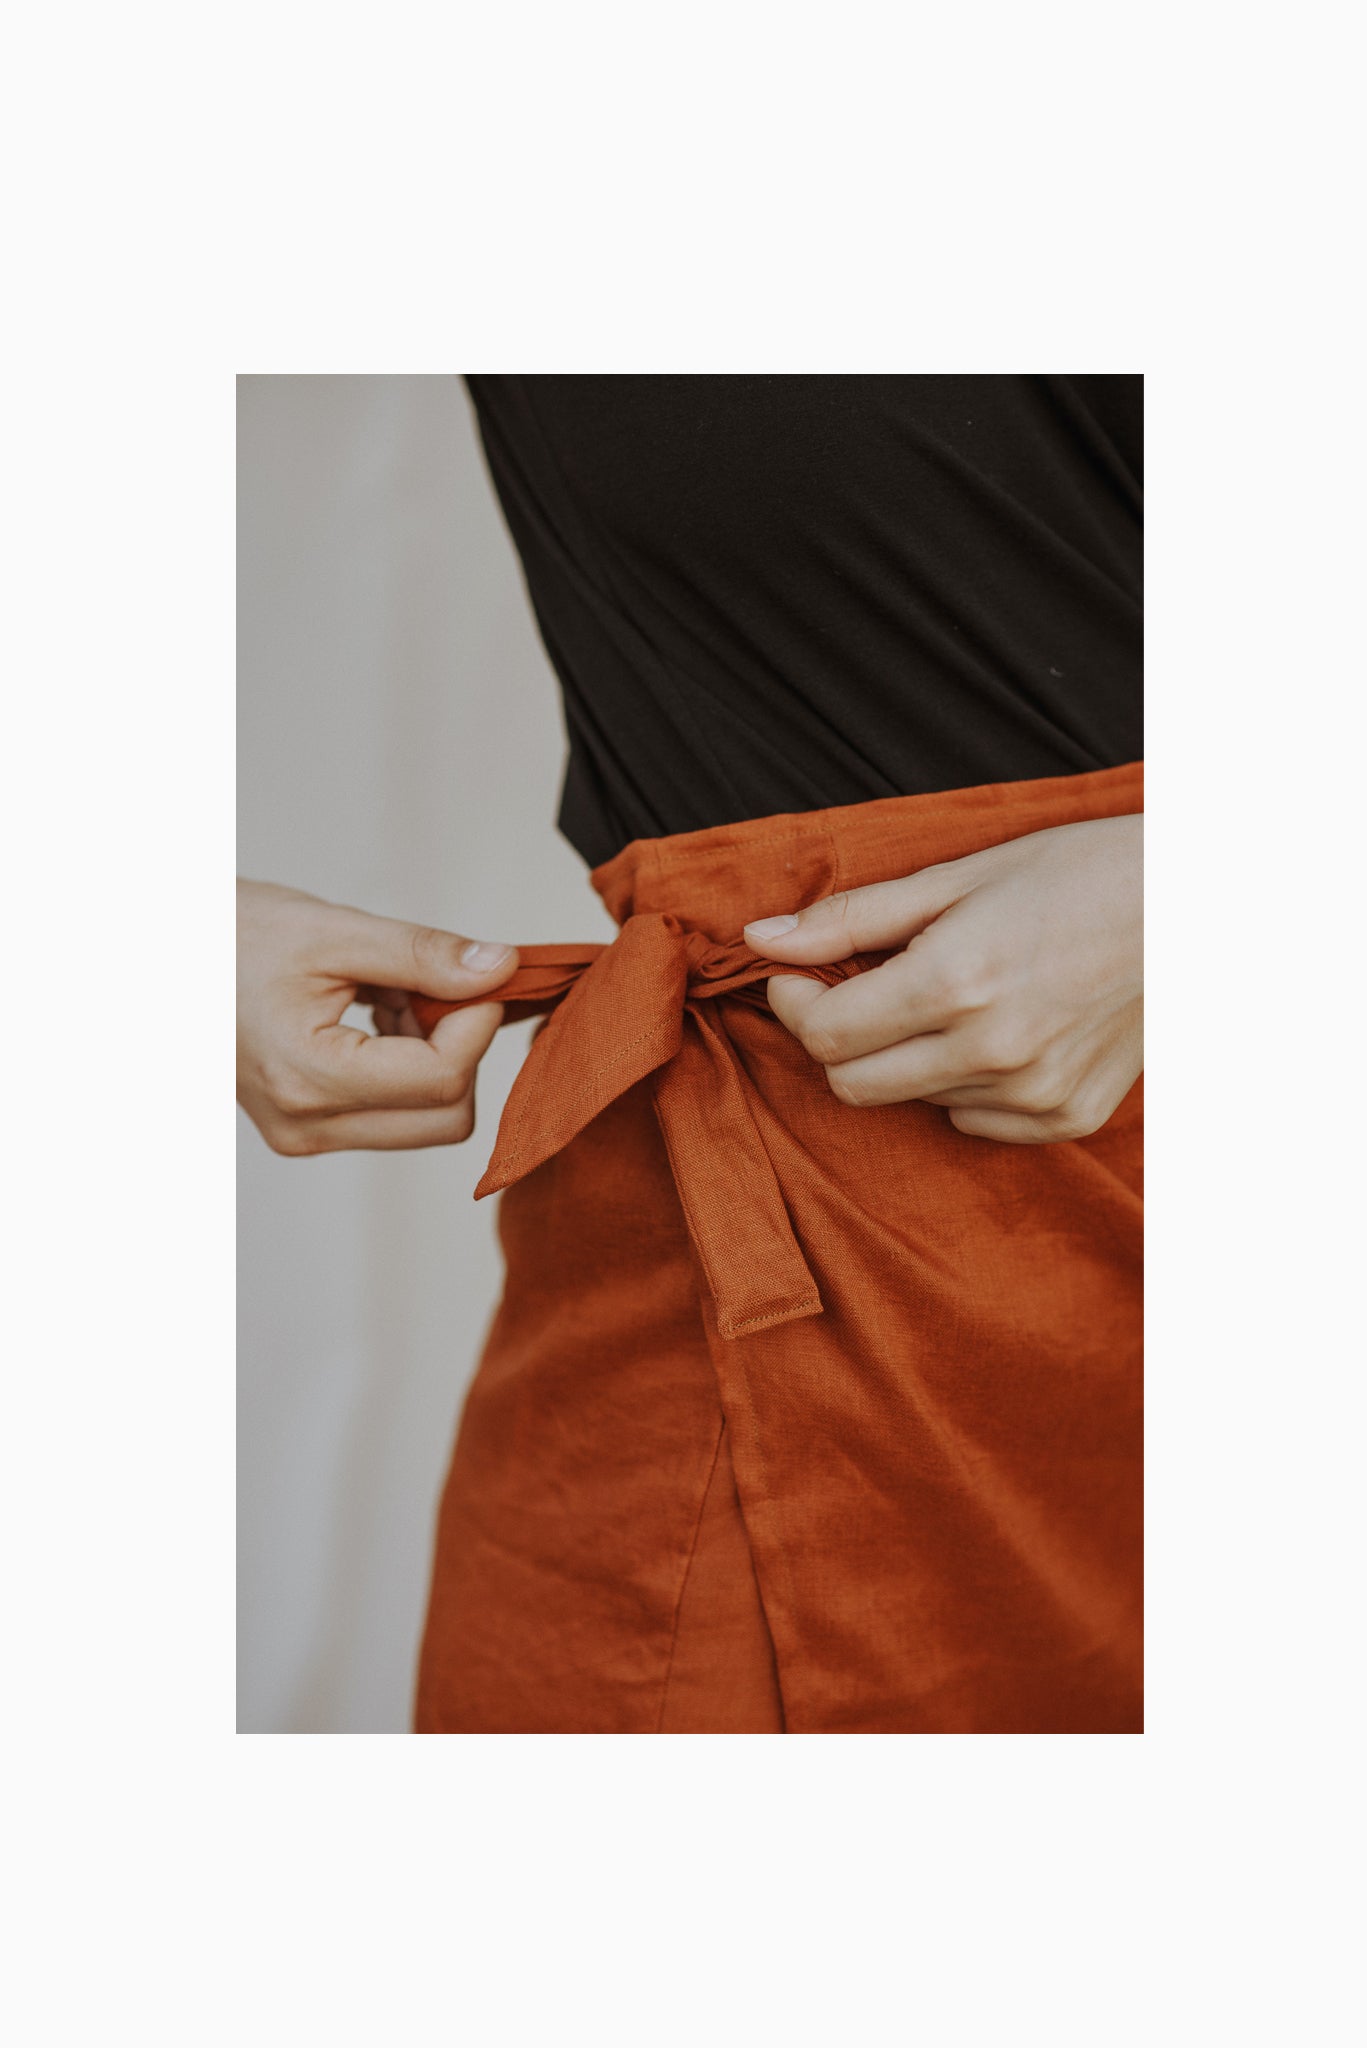 Bellbird Wrap Skirt